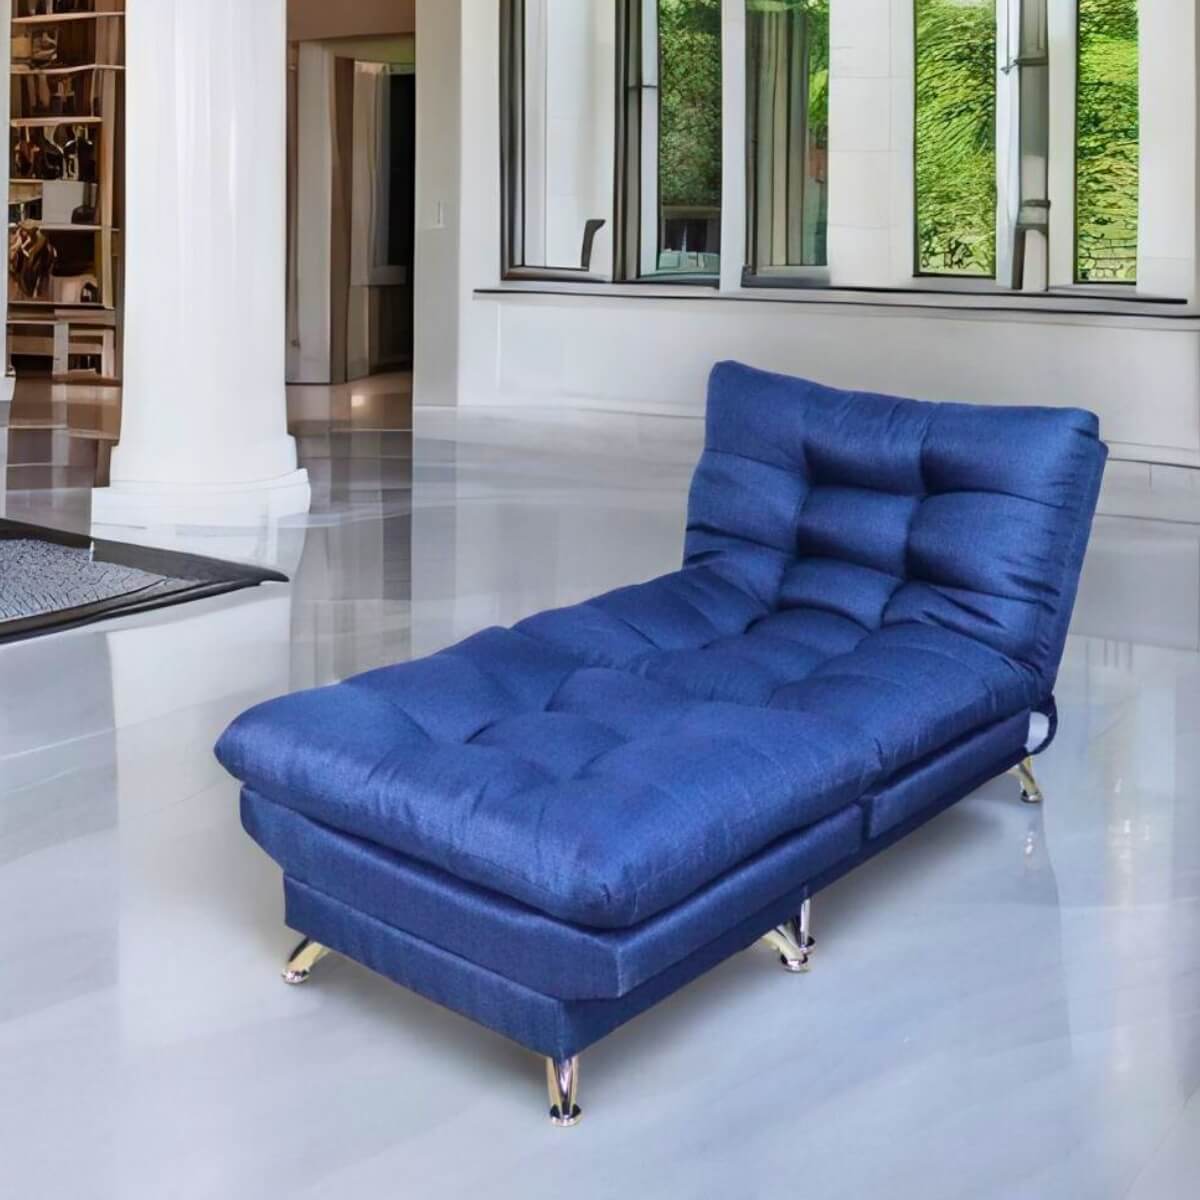 sillón pequeño con taburete individual azul donde comprar cerca de mi norval #color_marino